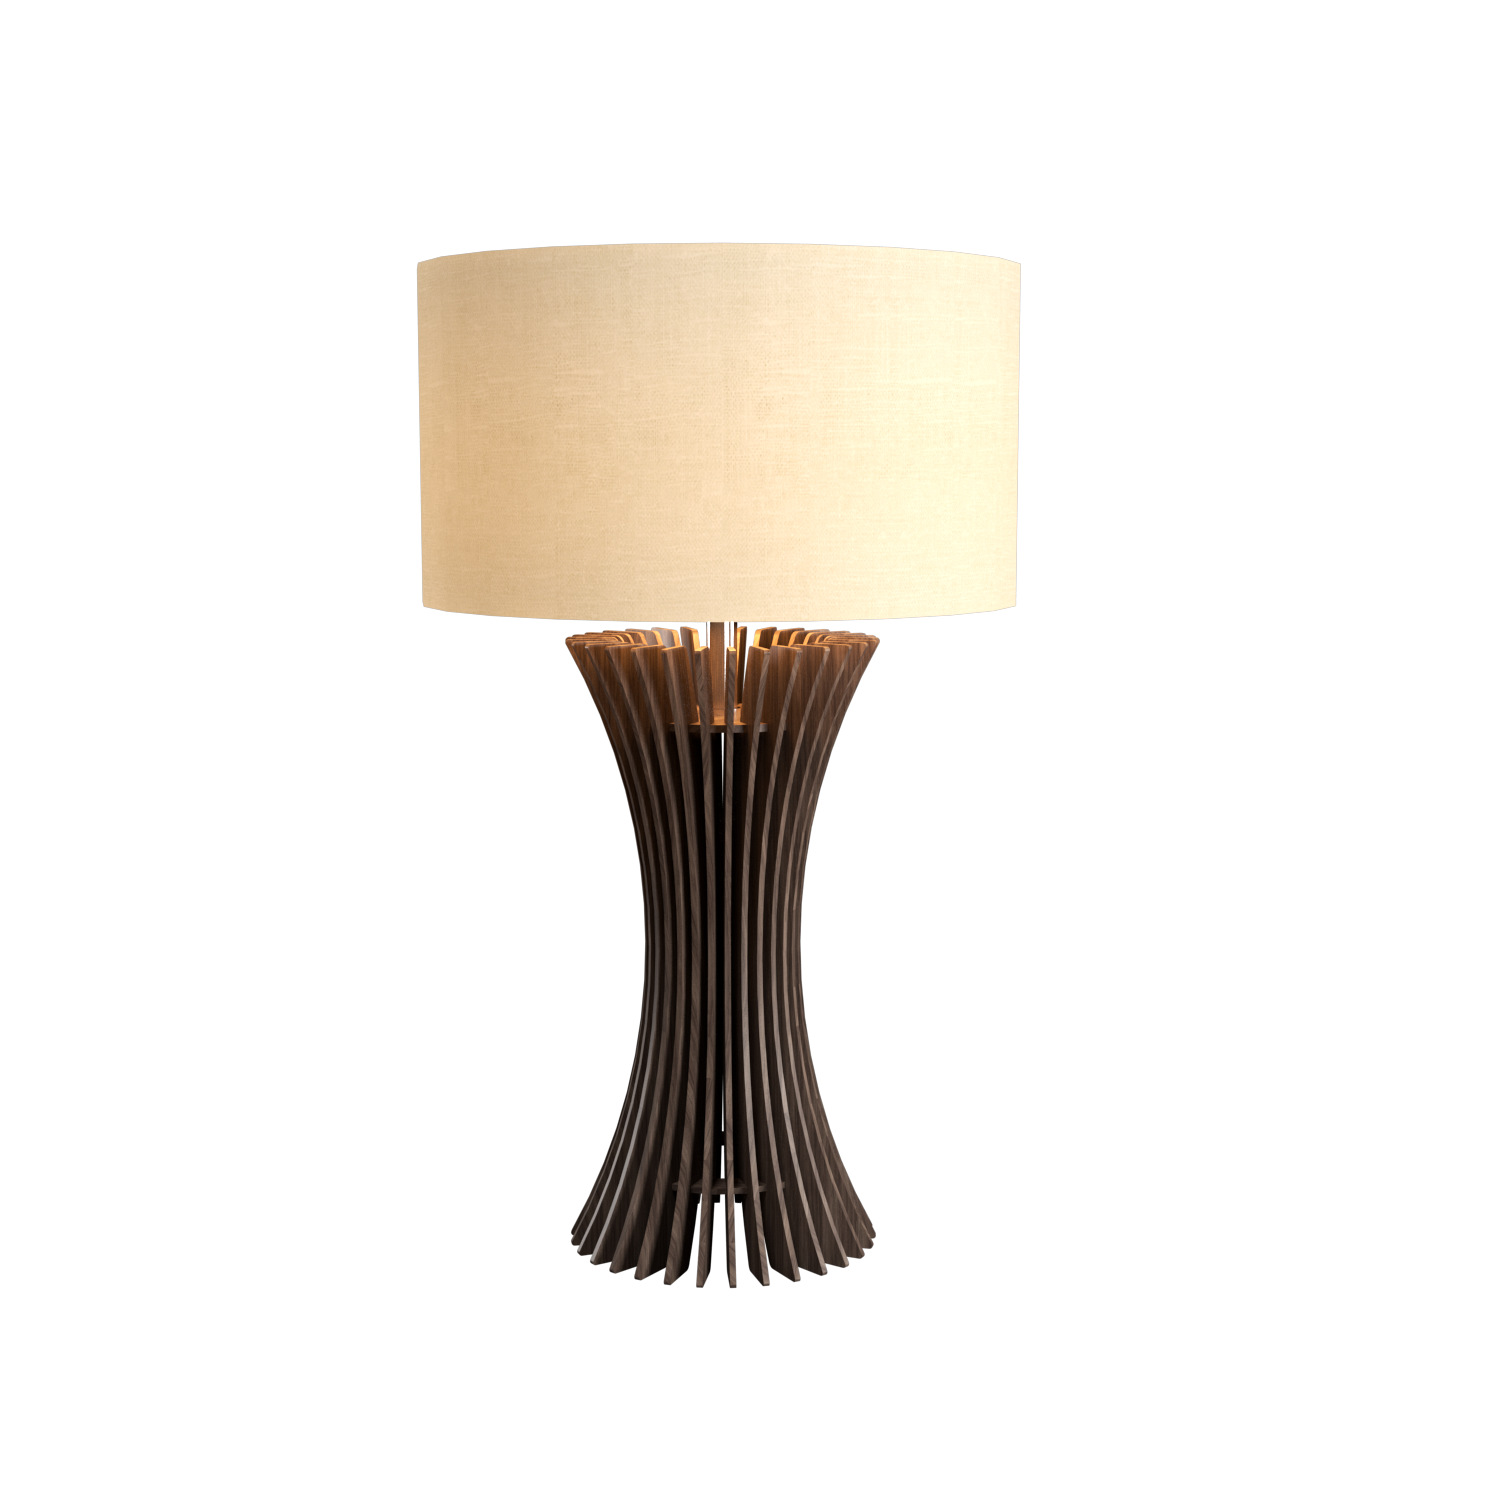 Table Lamp Accord Stecche Di Legno 7013 - Stecche Di Legno Line Accord Lighting | 18. American Walnut